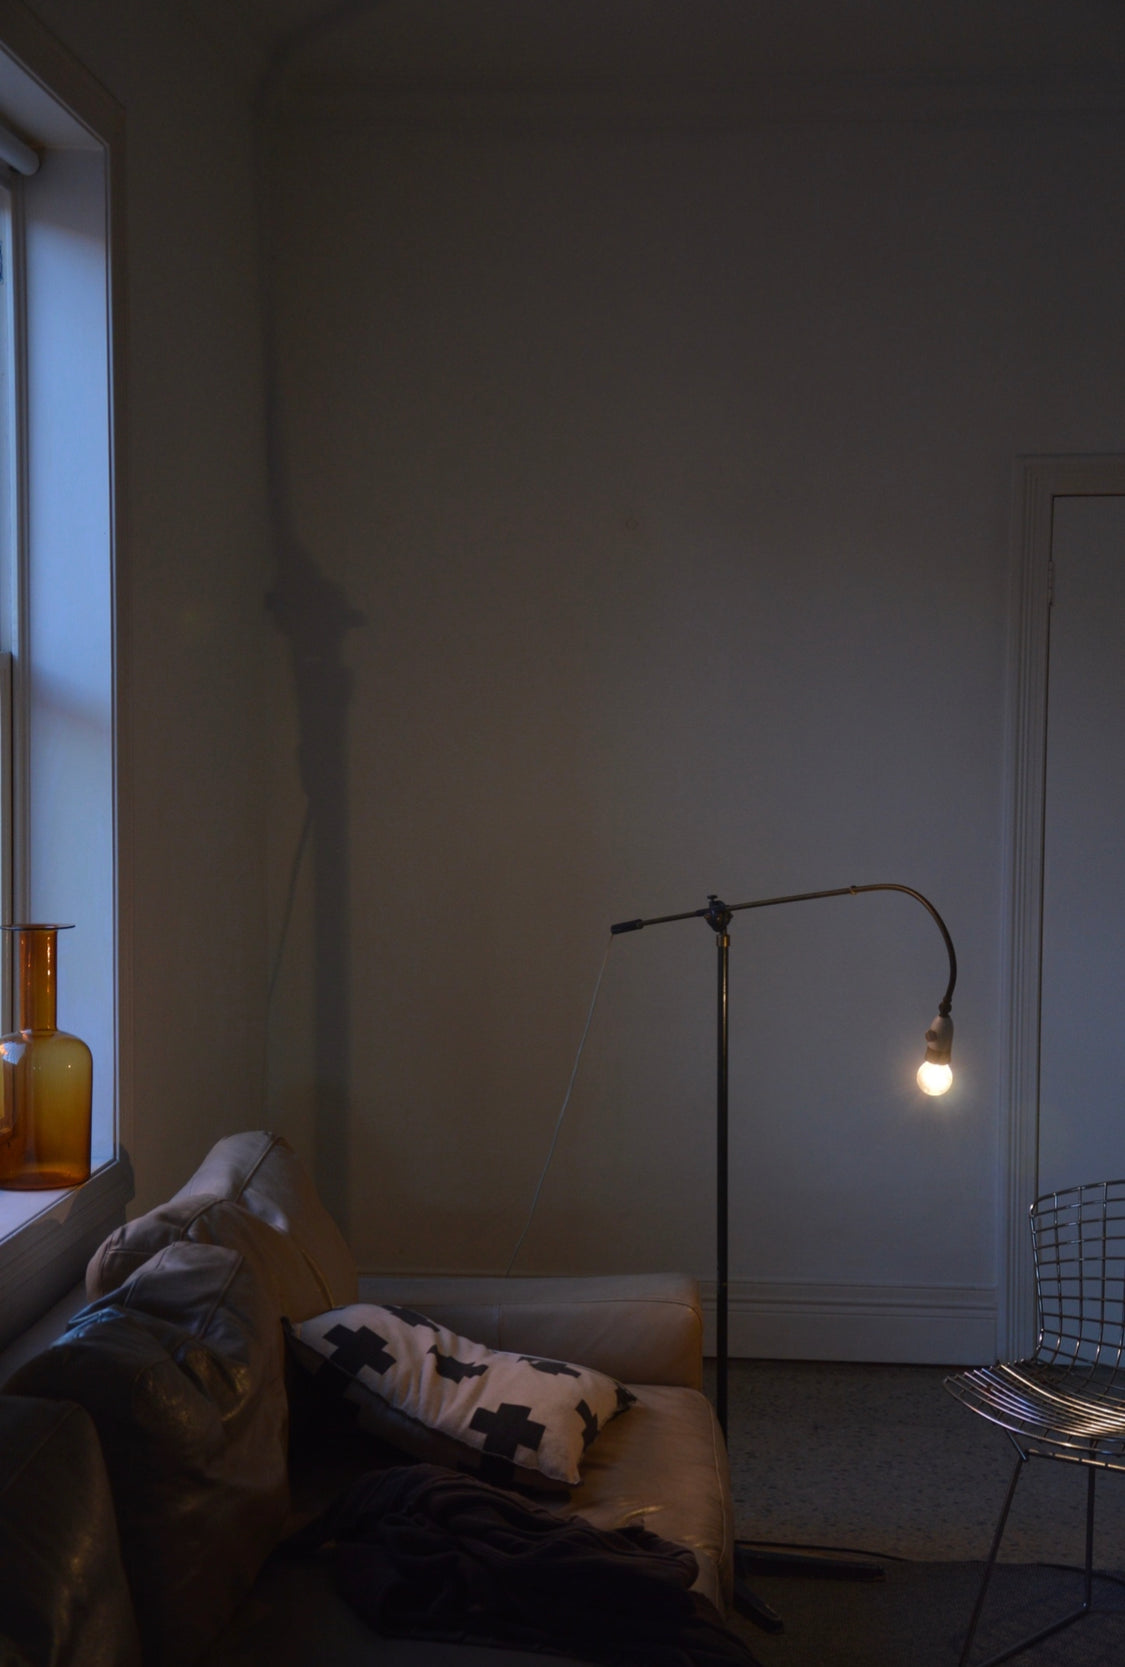 European mid century modern floor standing lamp reading light STUNNING